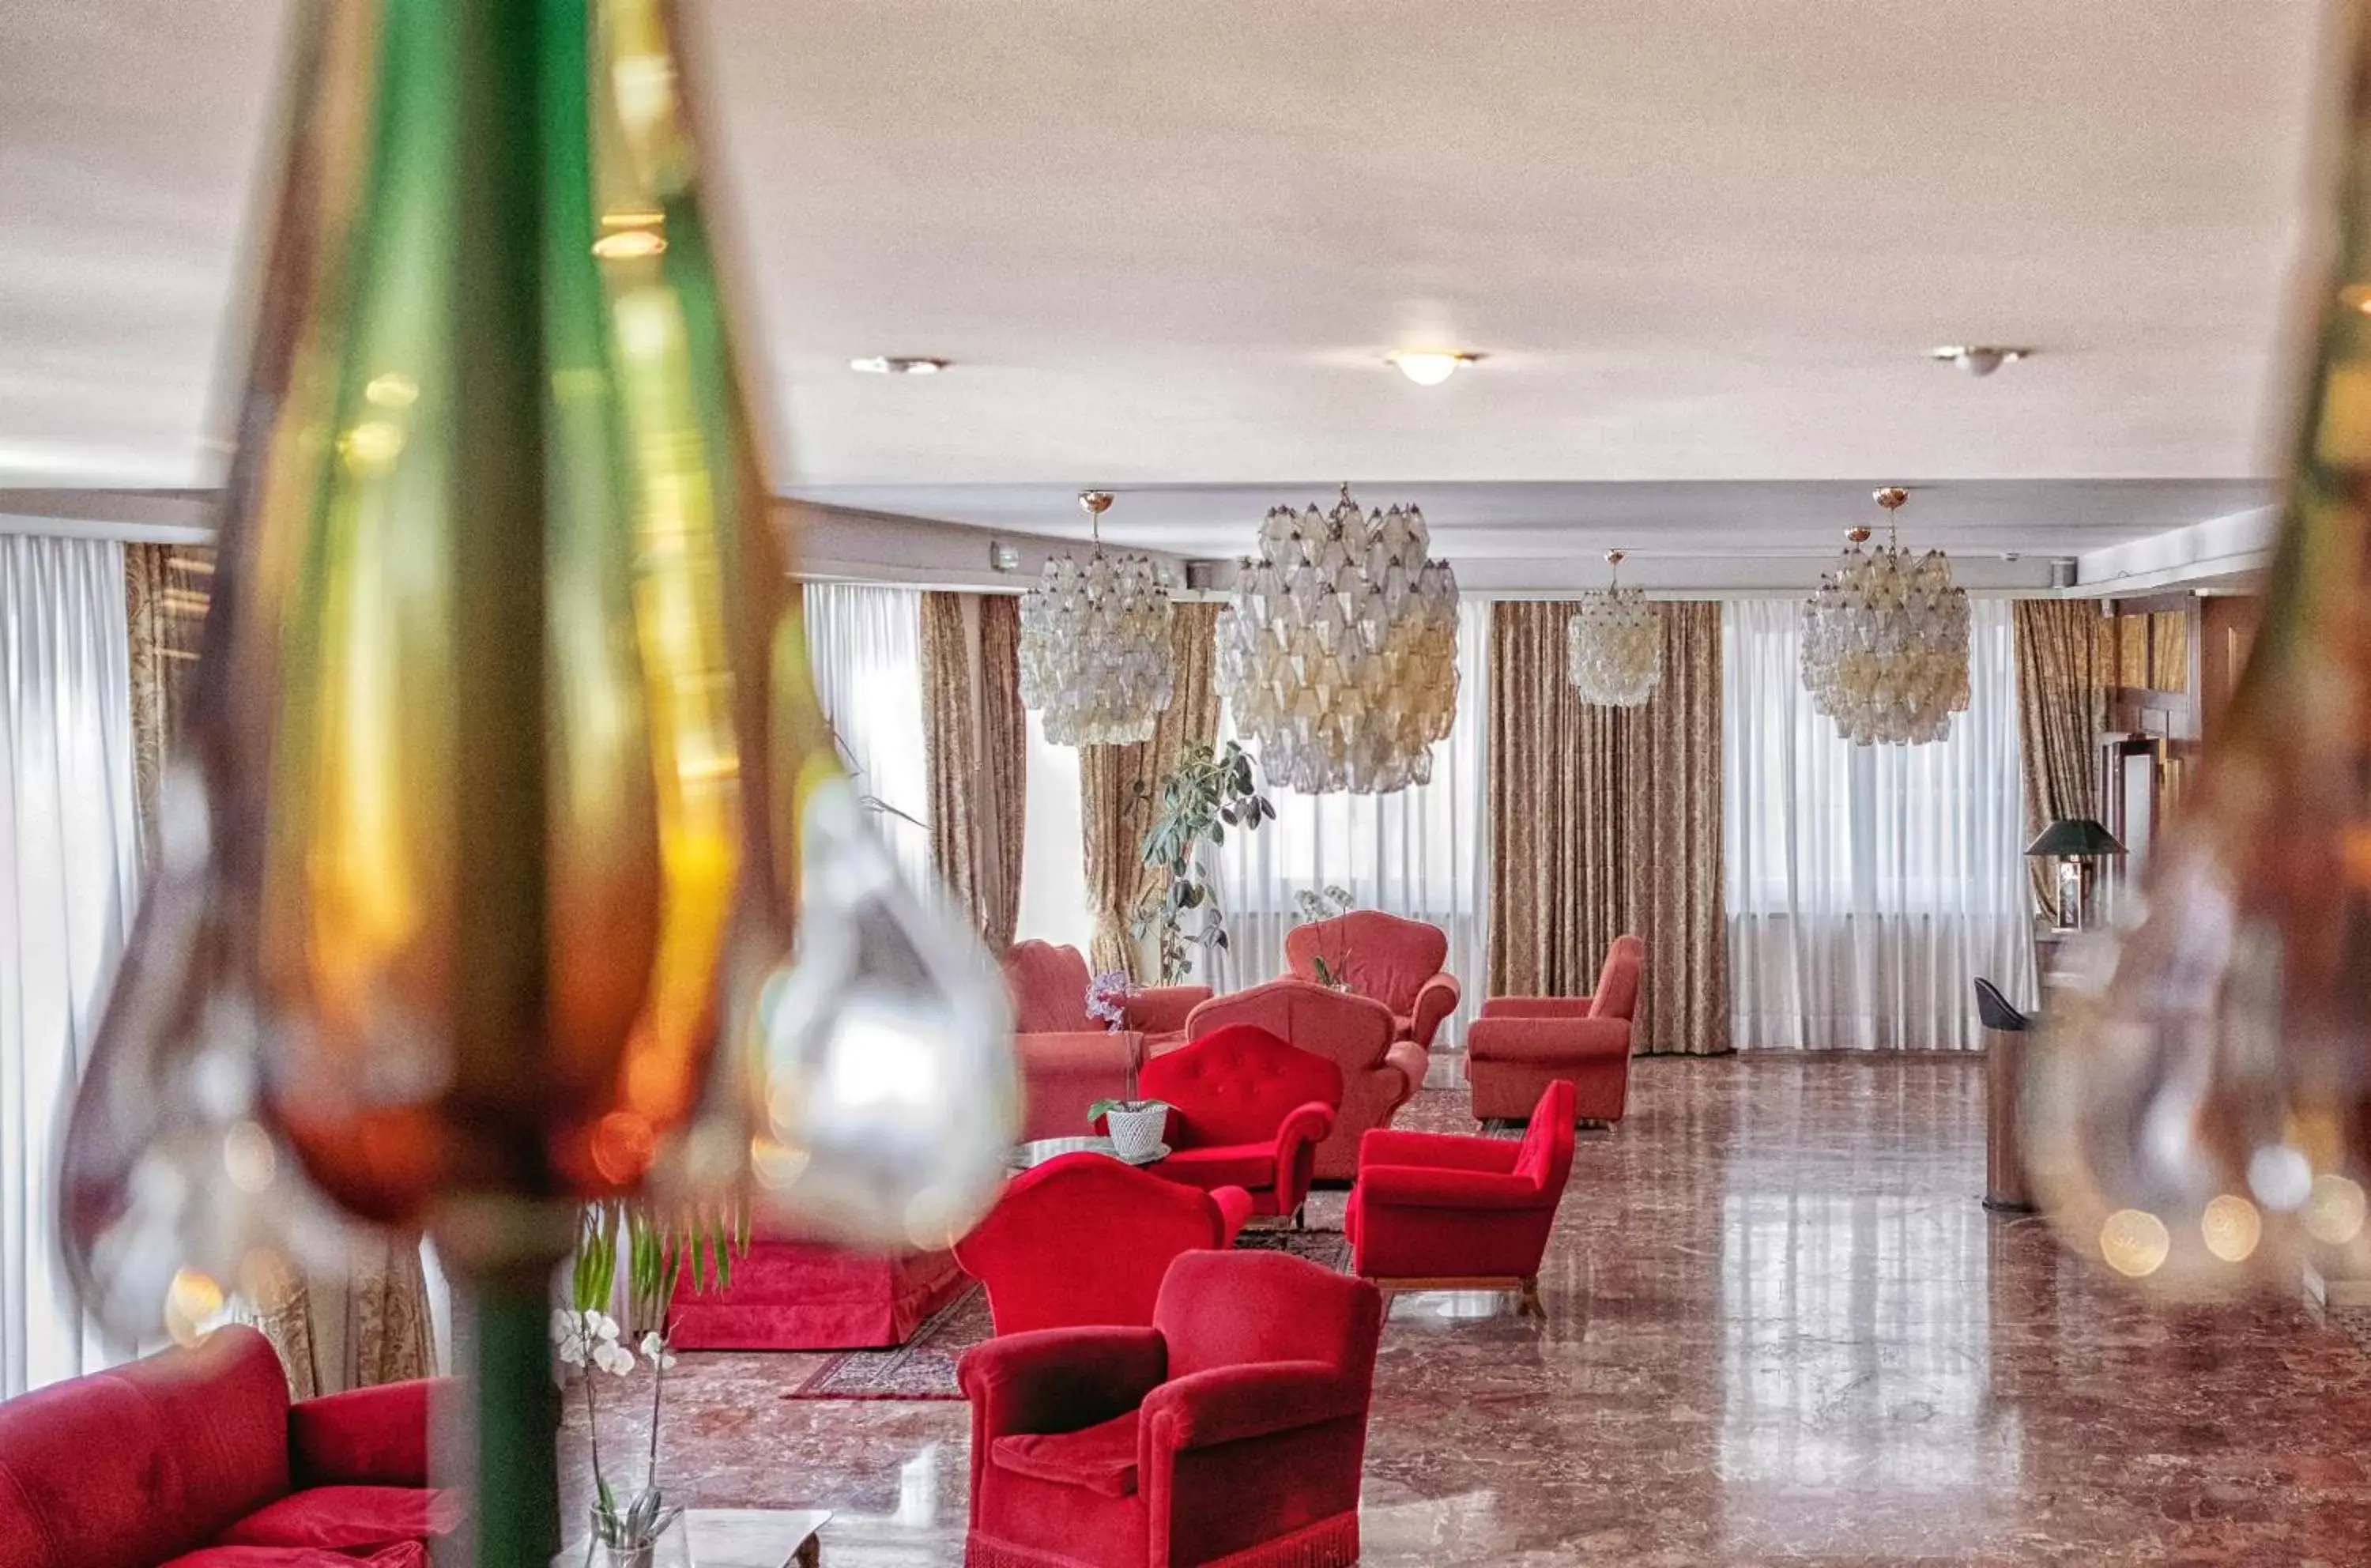 Lobby or reception in Hotel Rigel